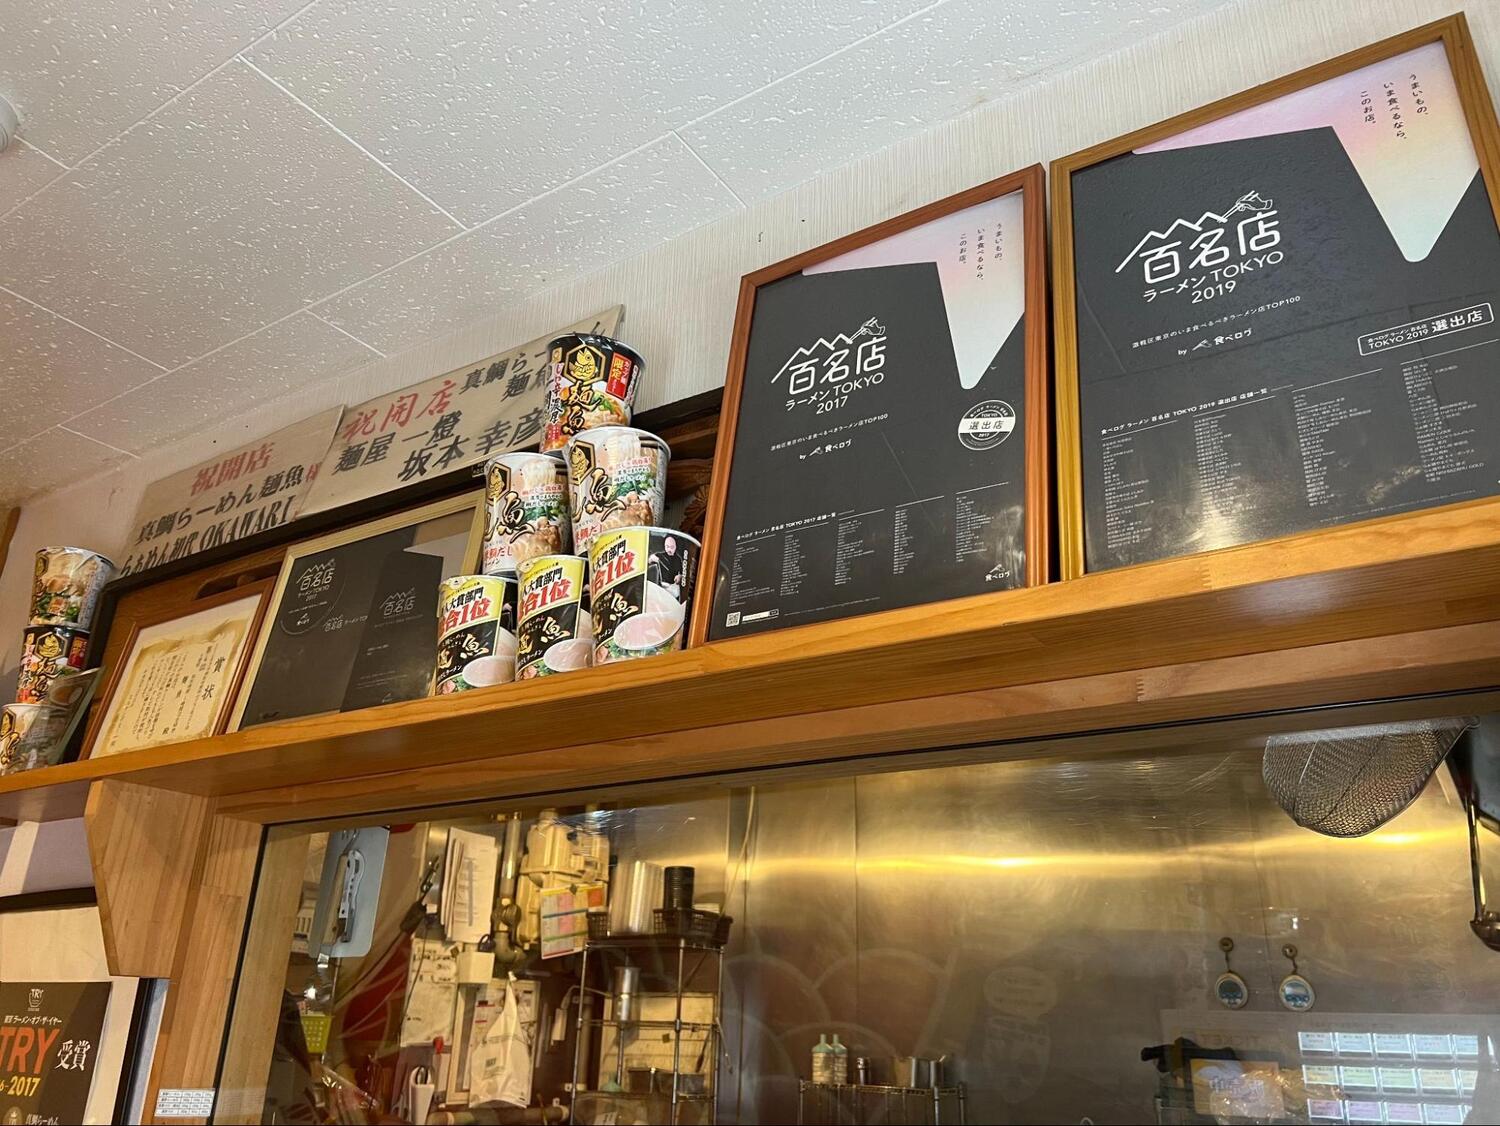 東京ラーメン・オブ・ザ・イヤー、食べログ百名店などの受賞経歴をもつラーメンの名店。